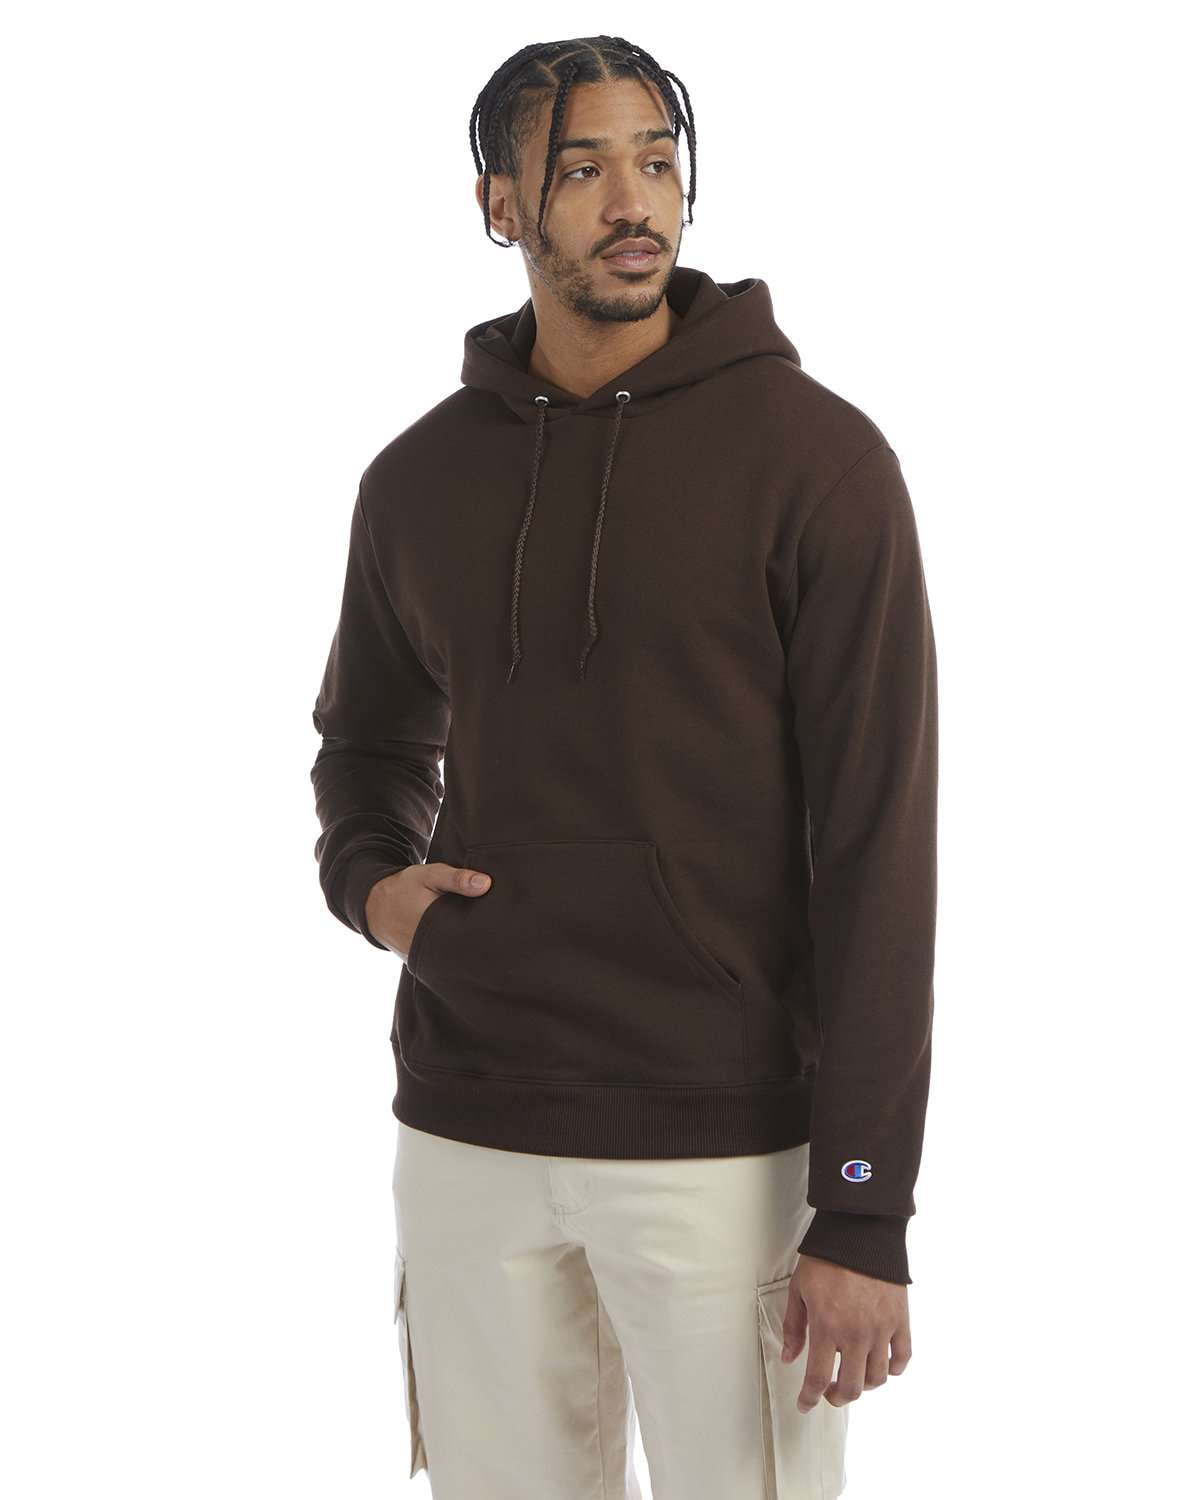 S700 Adult Powerblend Hooded Sweatshirt -